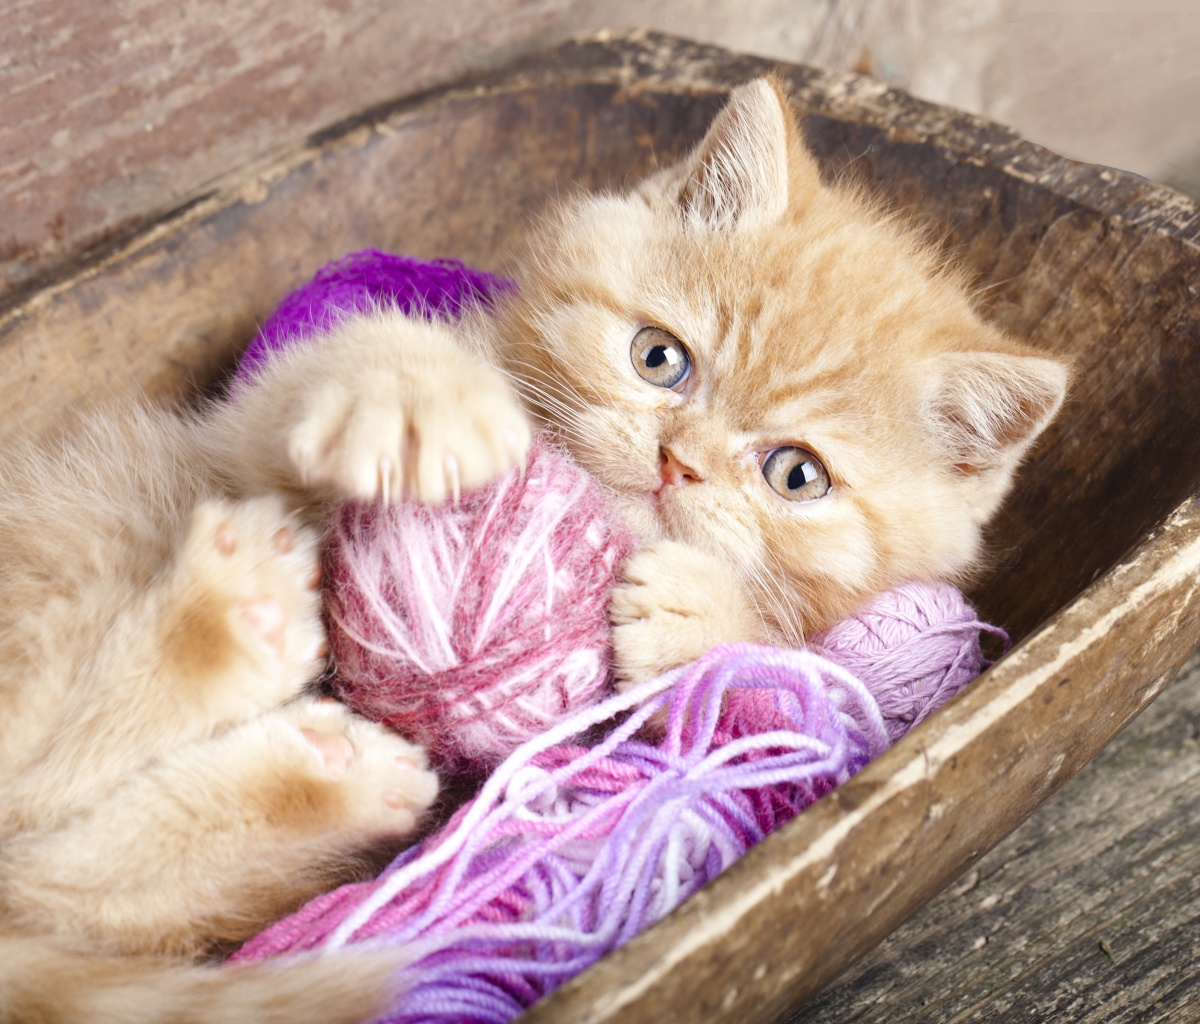 Sfondi Cute Kitten Playing With A Ball Of Yarn 1200x1024